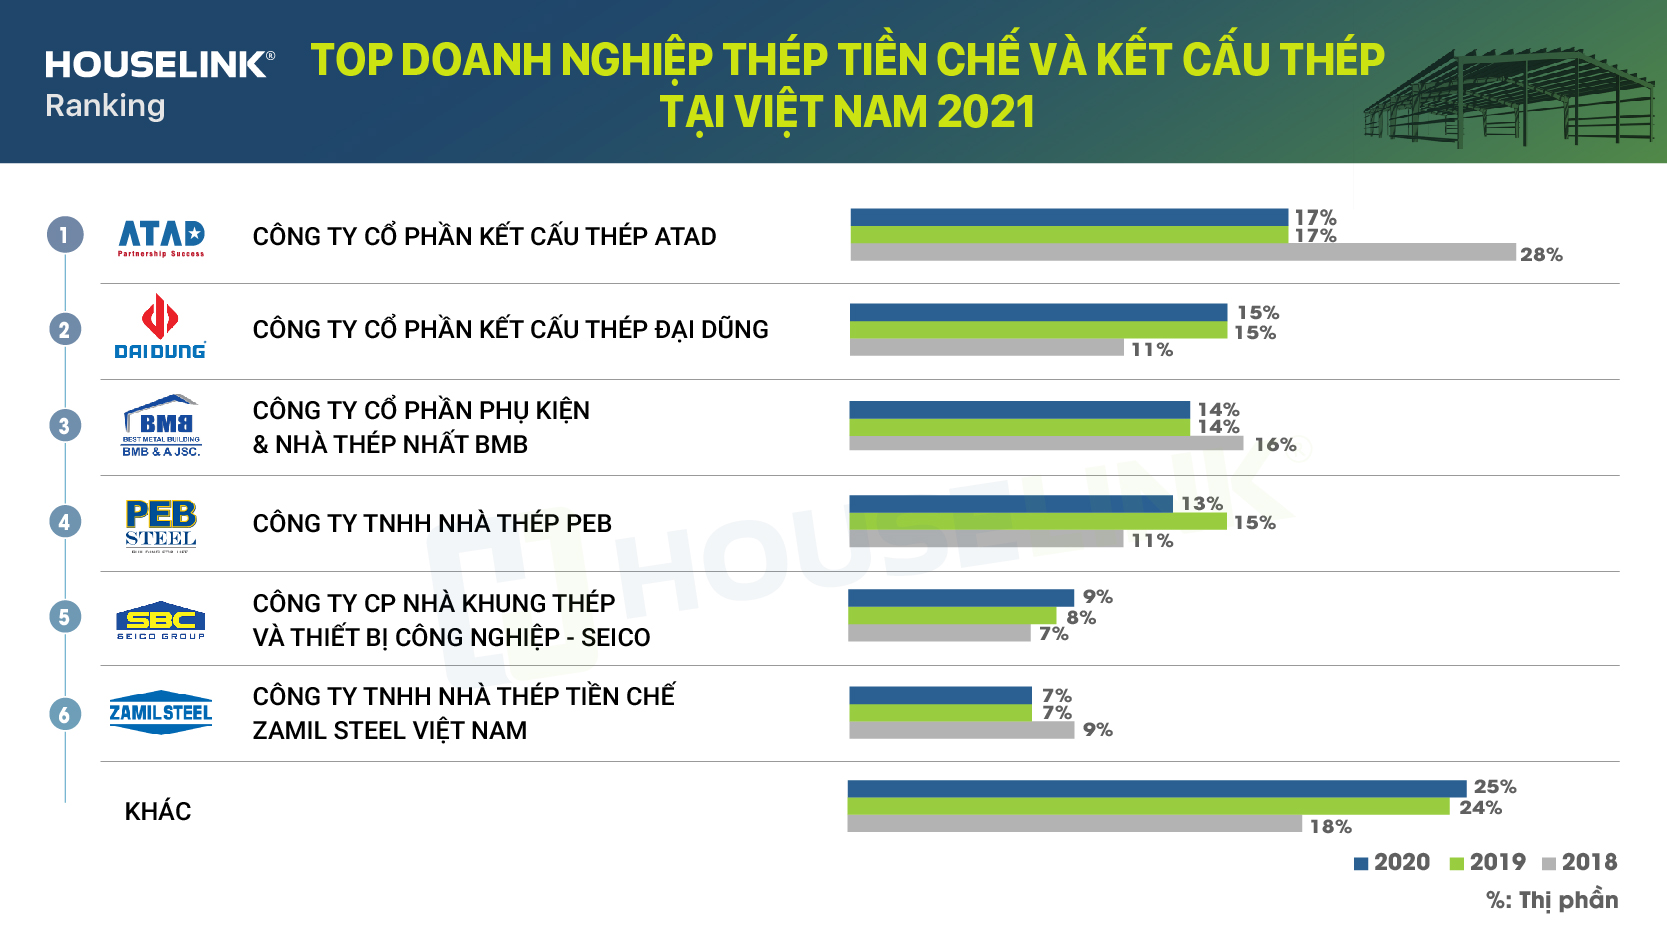 Top doanh nghiệp thép tiền chế và kết cấu thép tại Việt Nam 2021